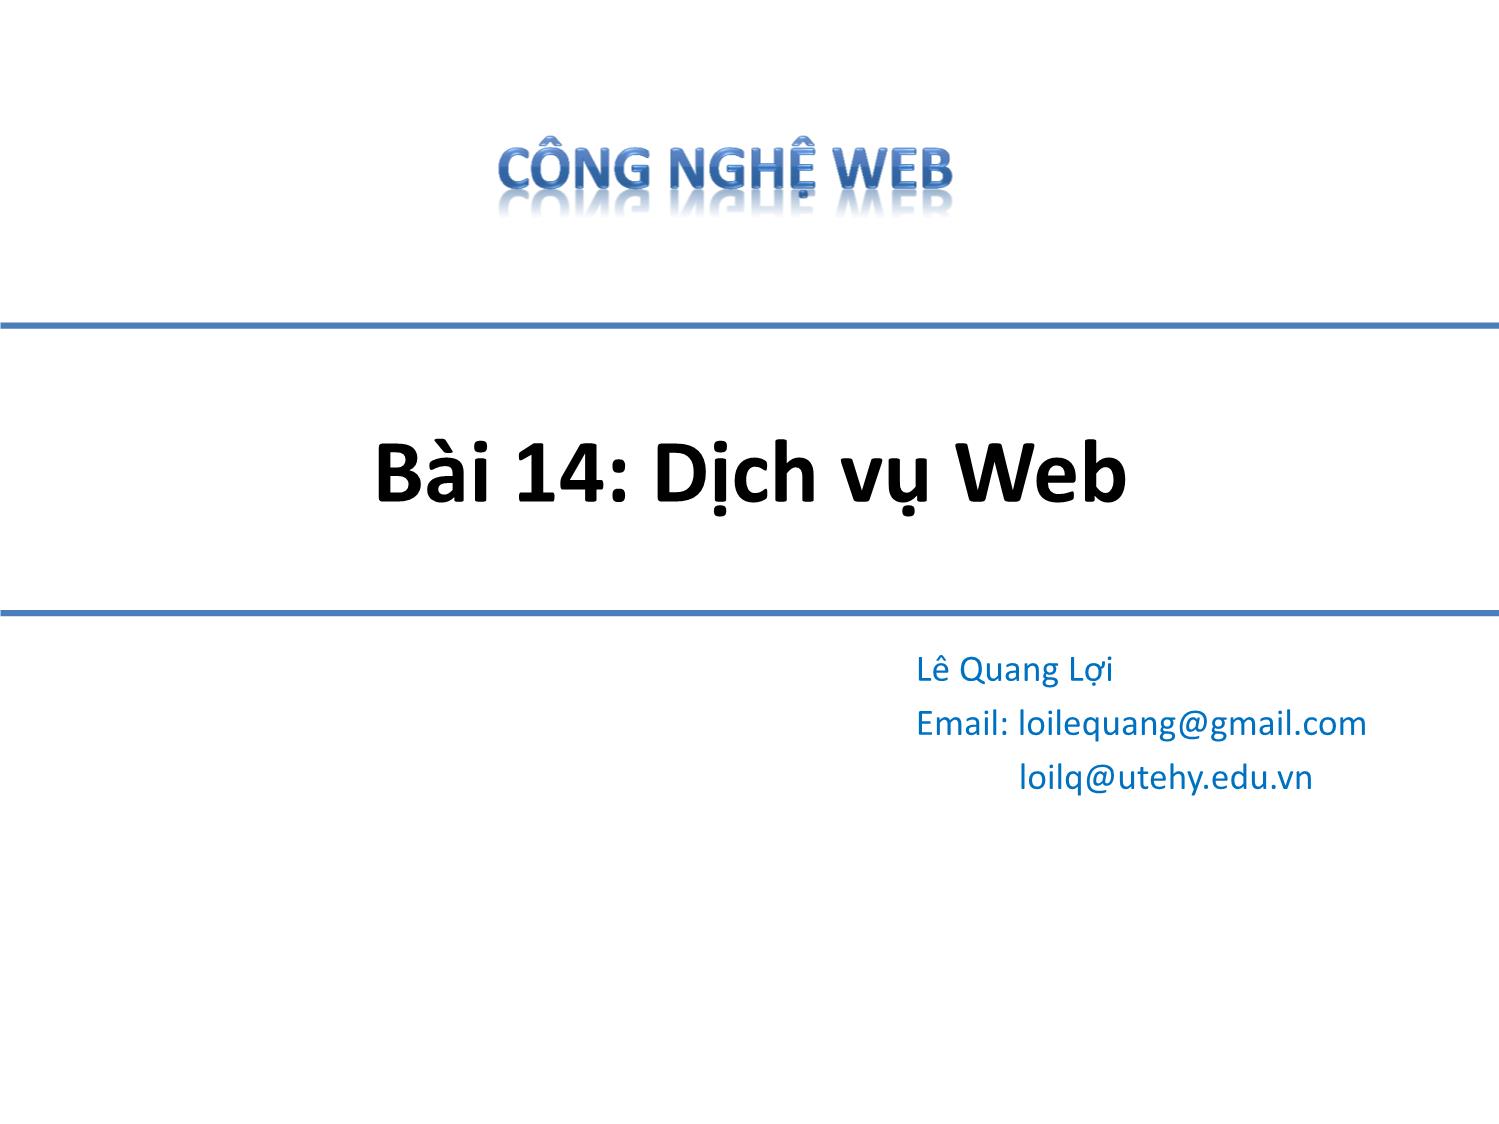 Bài giảng Công nghệ Web - Bài 14: Dịch vụ Web - Lê Quang Lợi trang 1